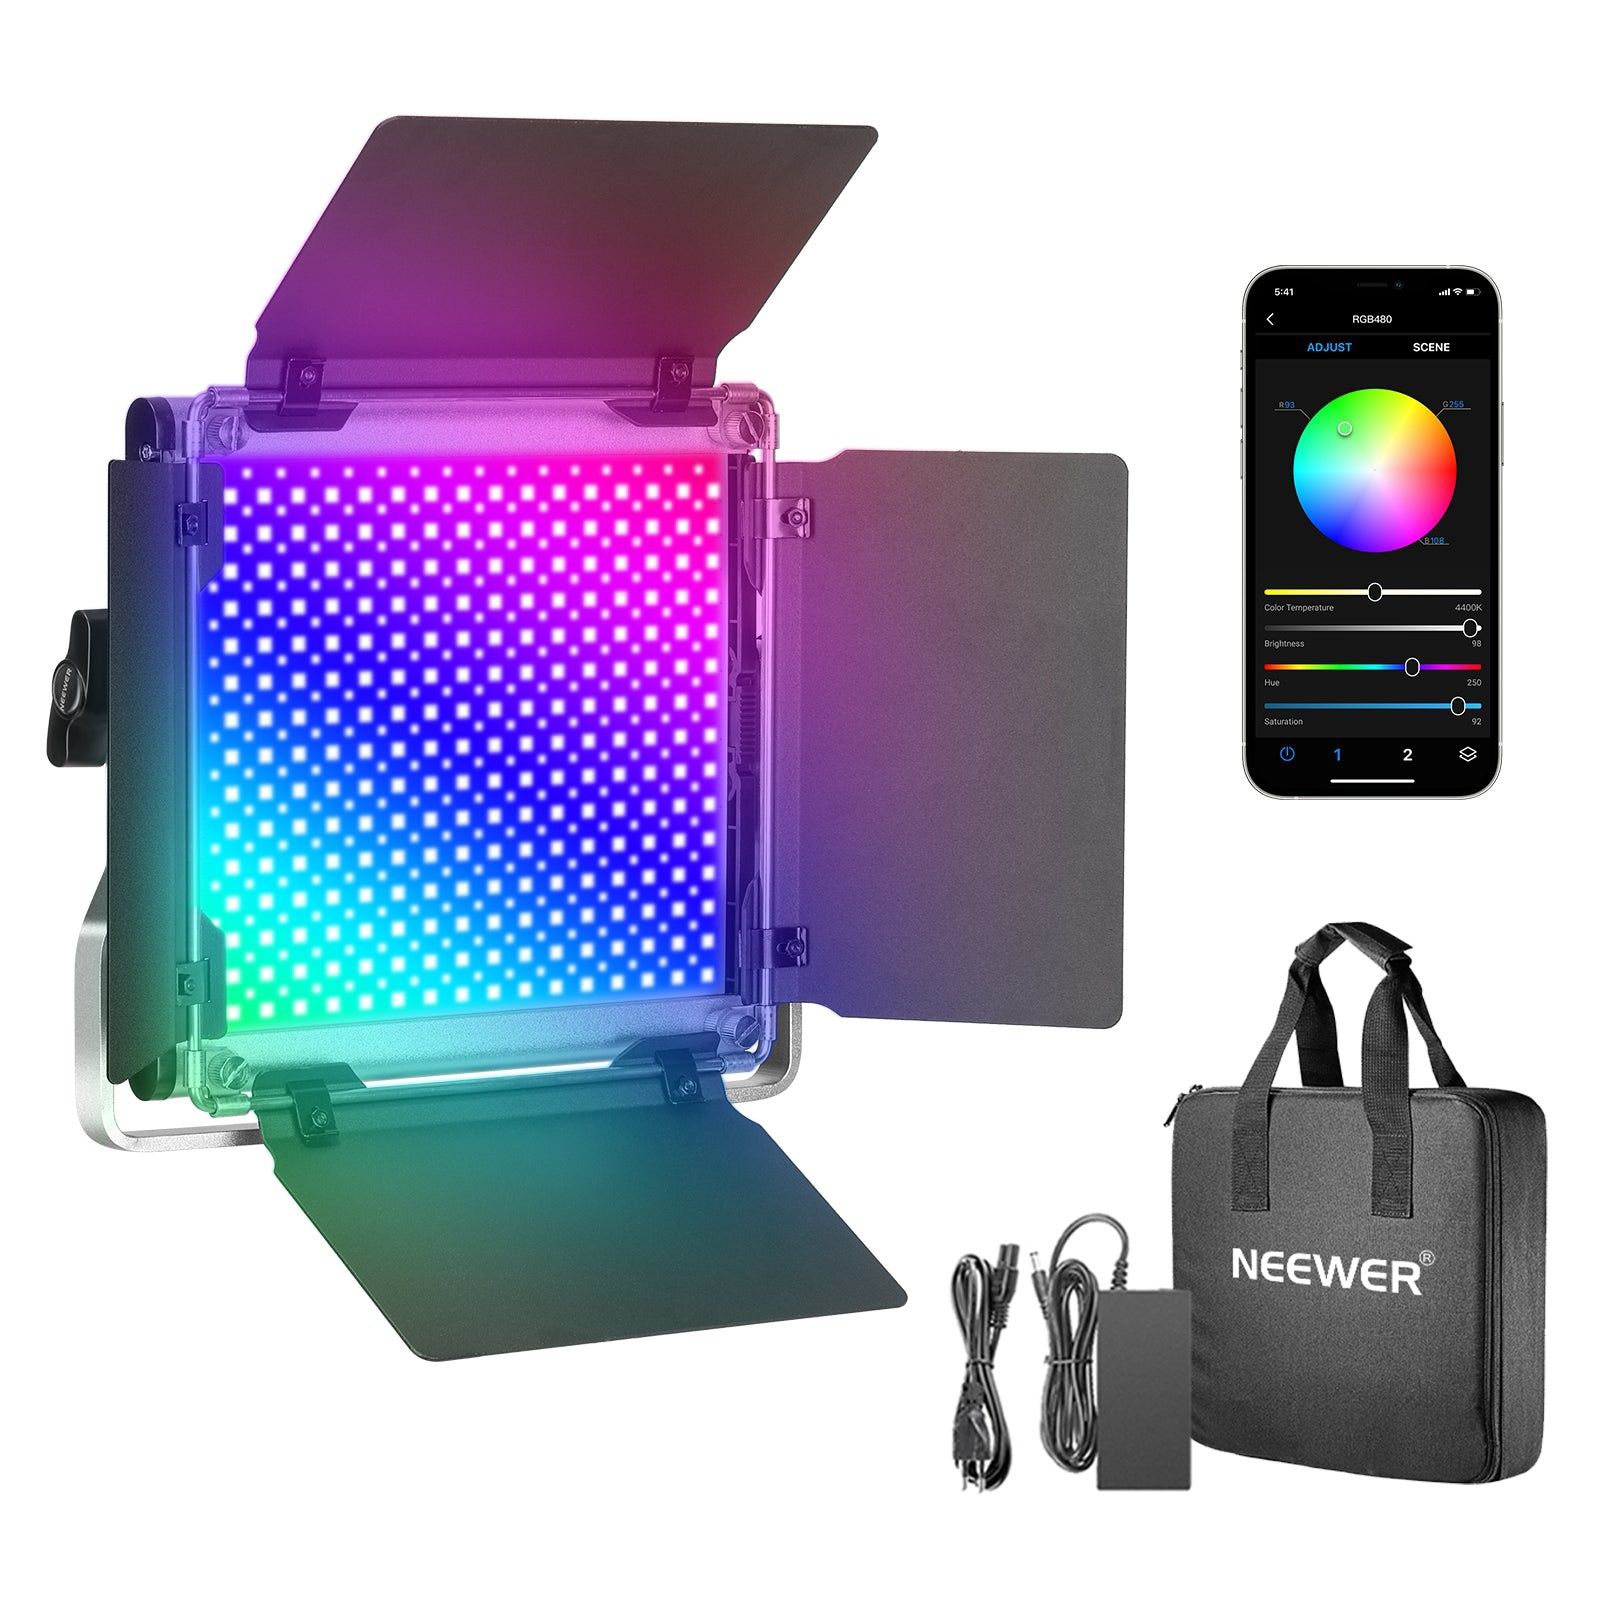 Neewer RGB480 painel de Iluminação LED com APP (bolsa incluída) NOVO